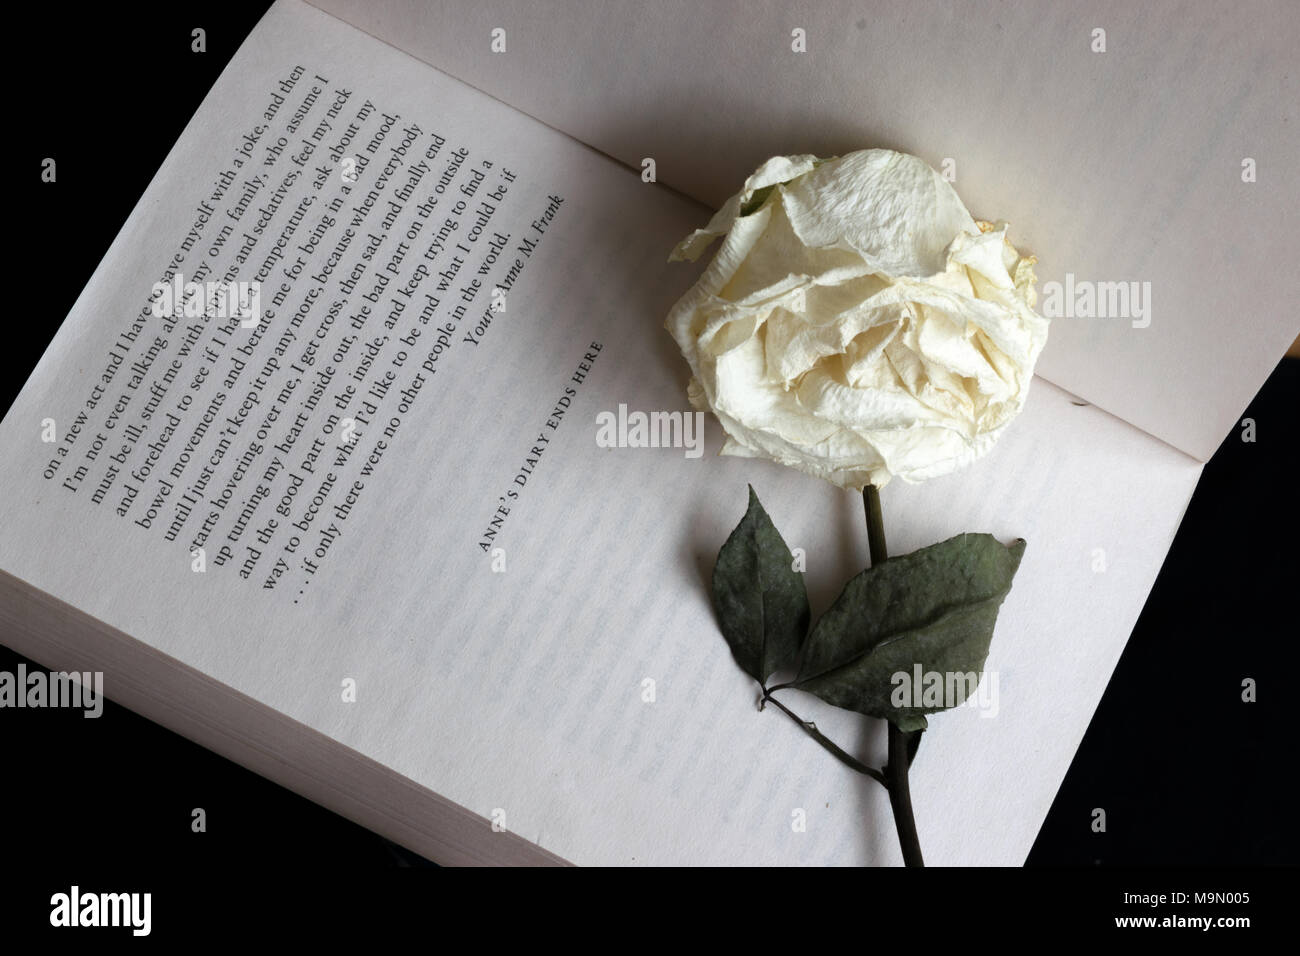 Letzte Seite von "Das Tagebuch eines jungen Mädchens" von Anne Frank, die Worte: "Anne Tagebuch endet hier" mit einem verdorrten Weiß auf dem Buch platziert Rose Stockfoto